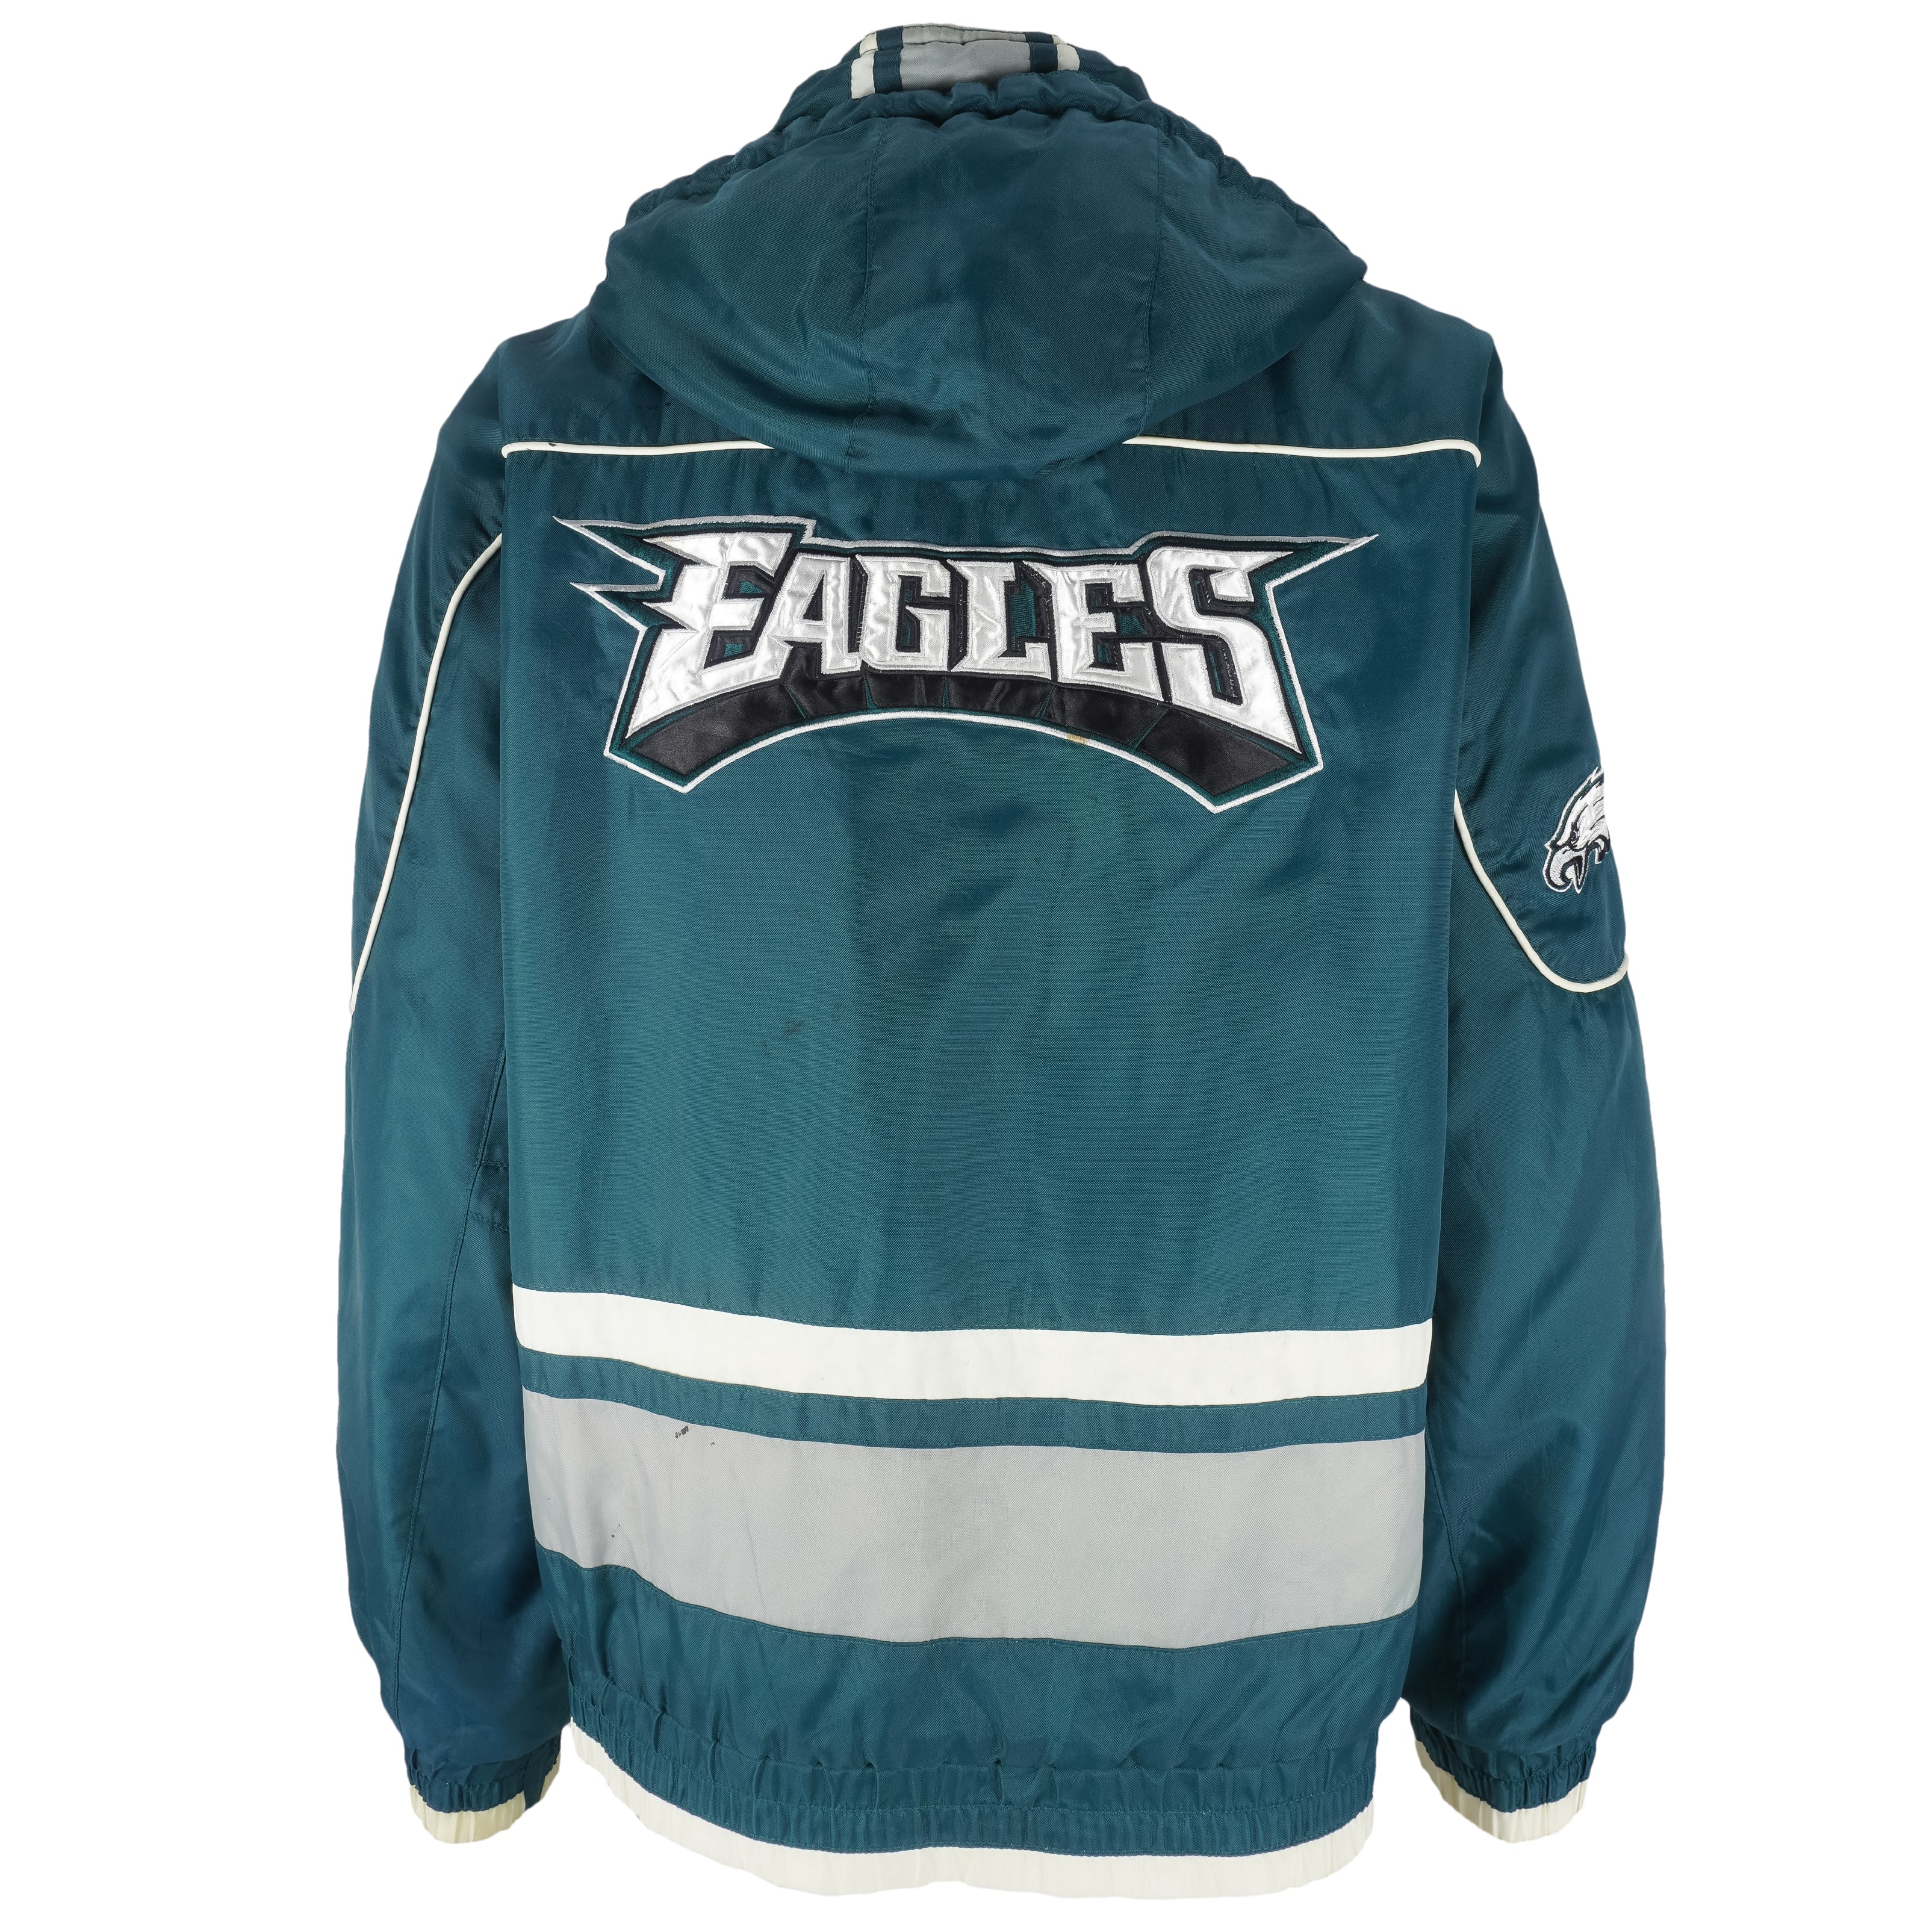 Vintage 90s Philadelphia Eagles NFL Pro Line Starter Puffy Jacket - XL